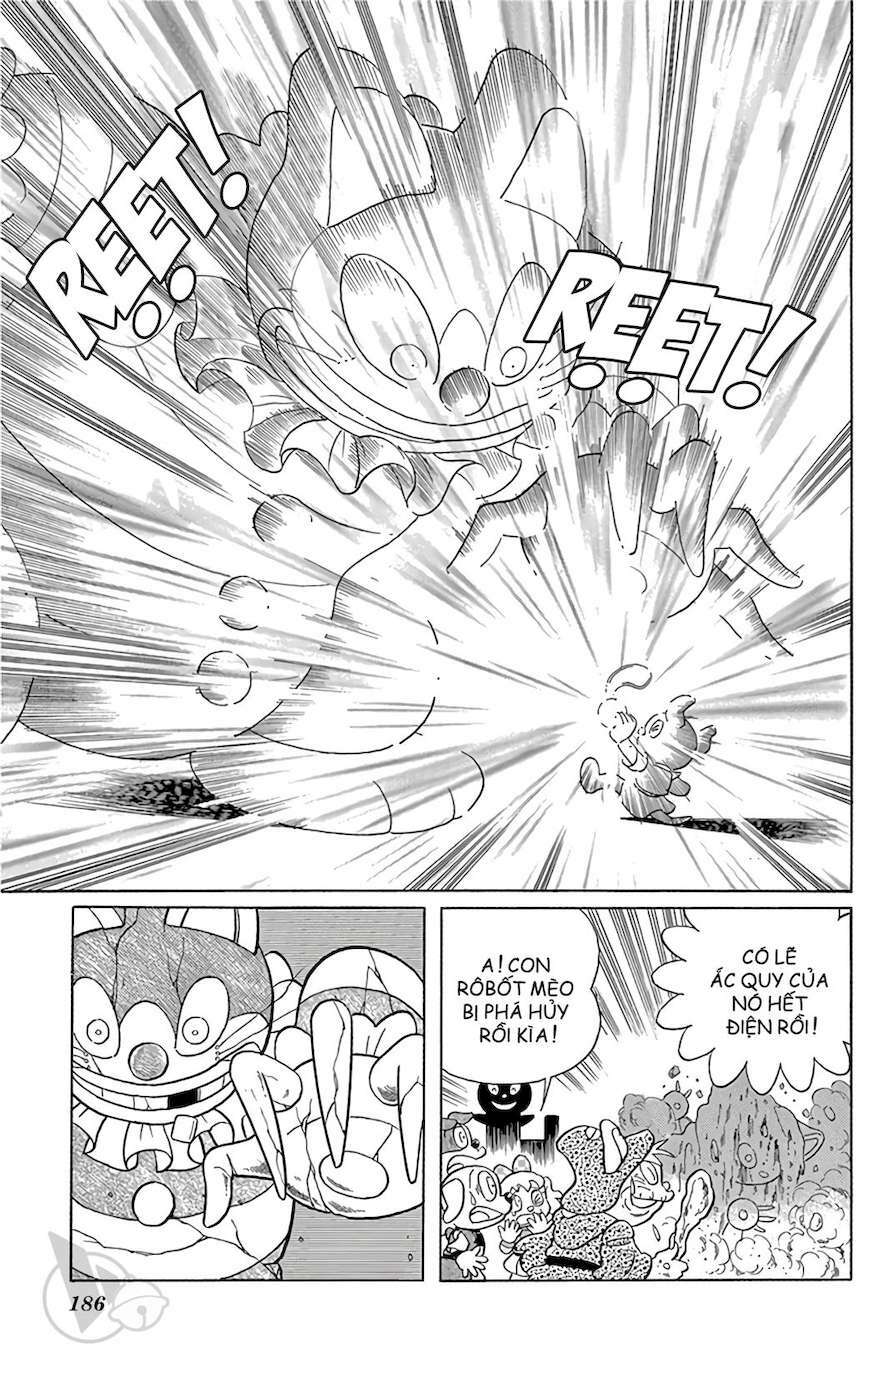 Truyện Tranh Doraemon: Nôbita Ở Vương Quốc Chó Mèo trang 185